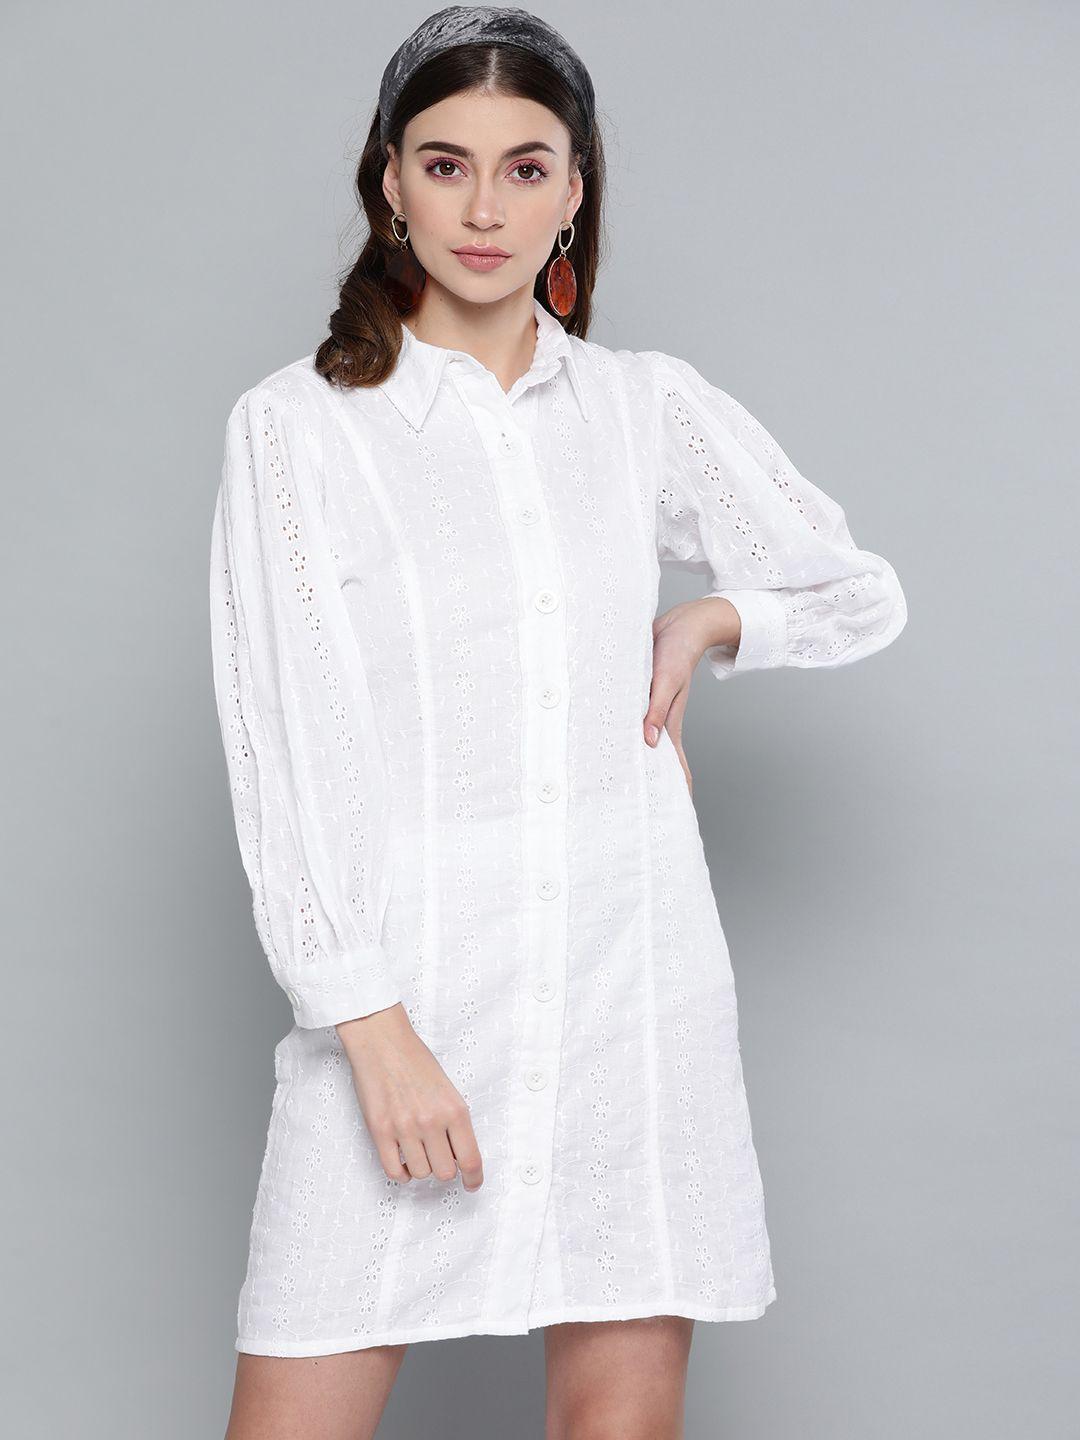 sassafras women white schiffli embroidered shirt dress